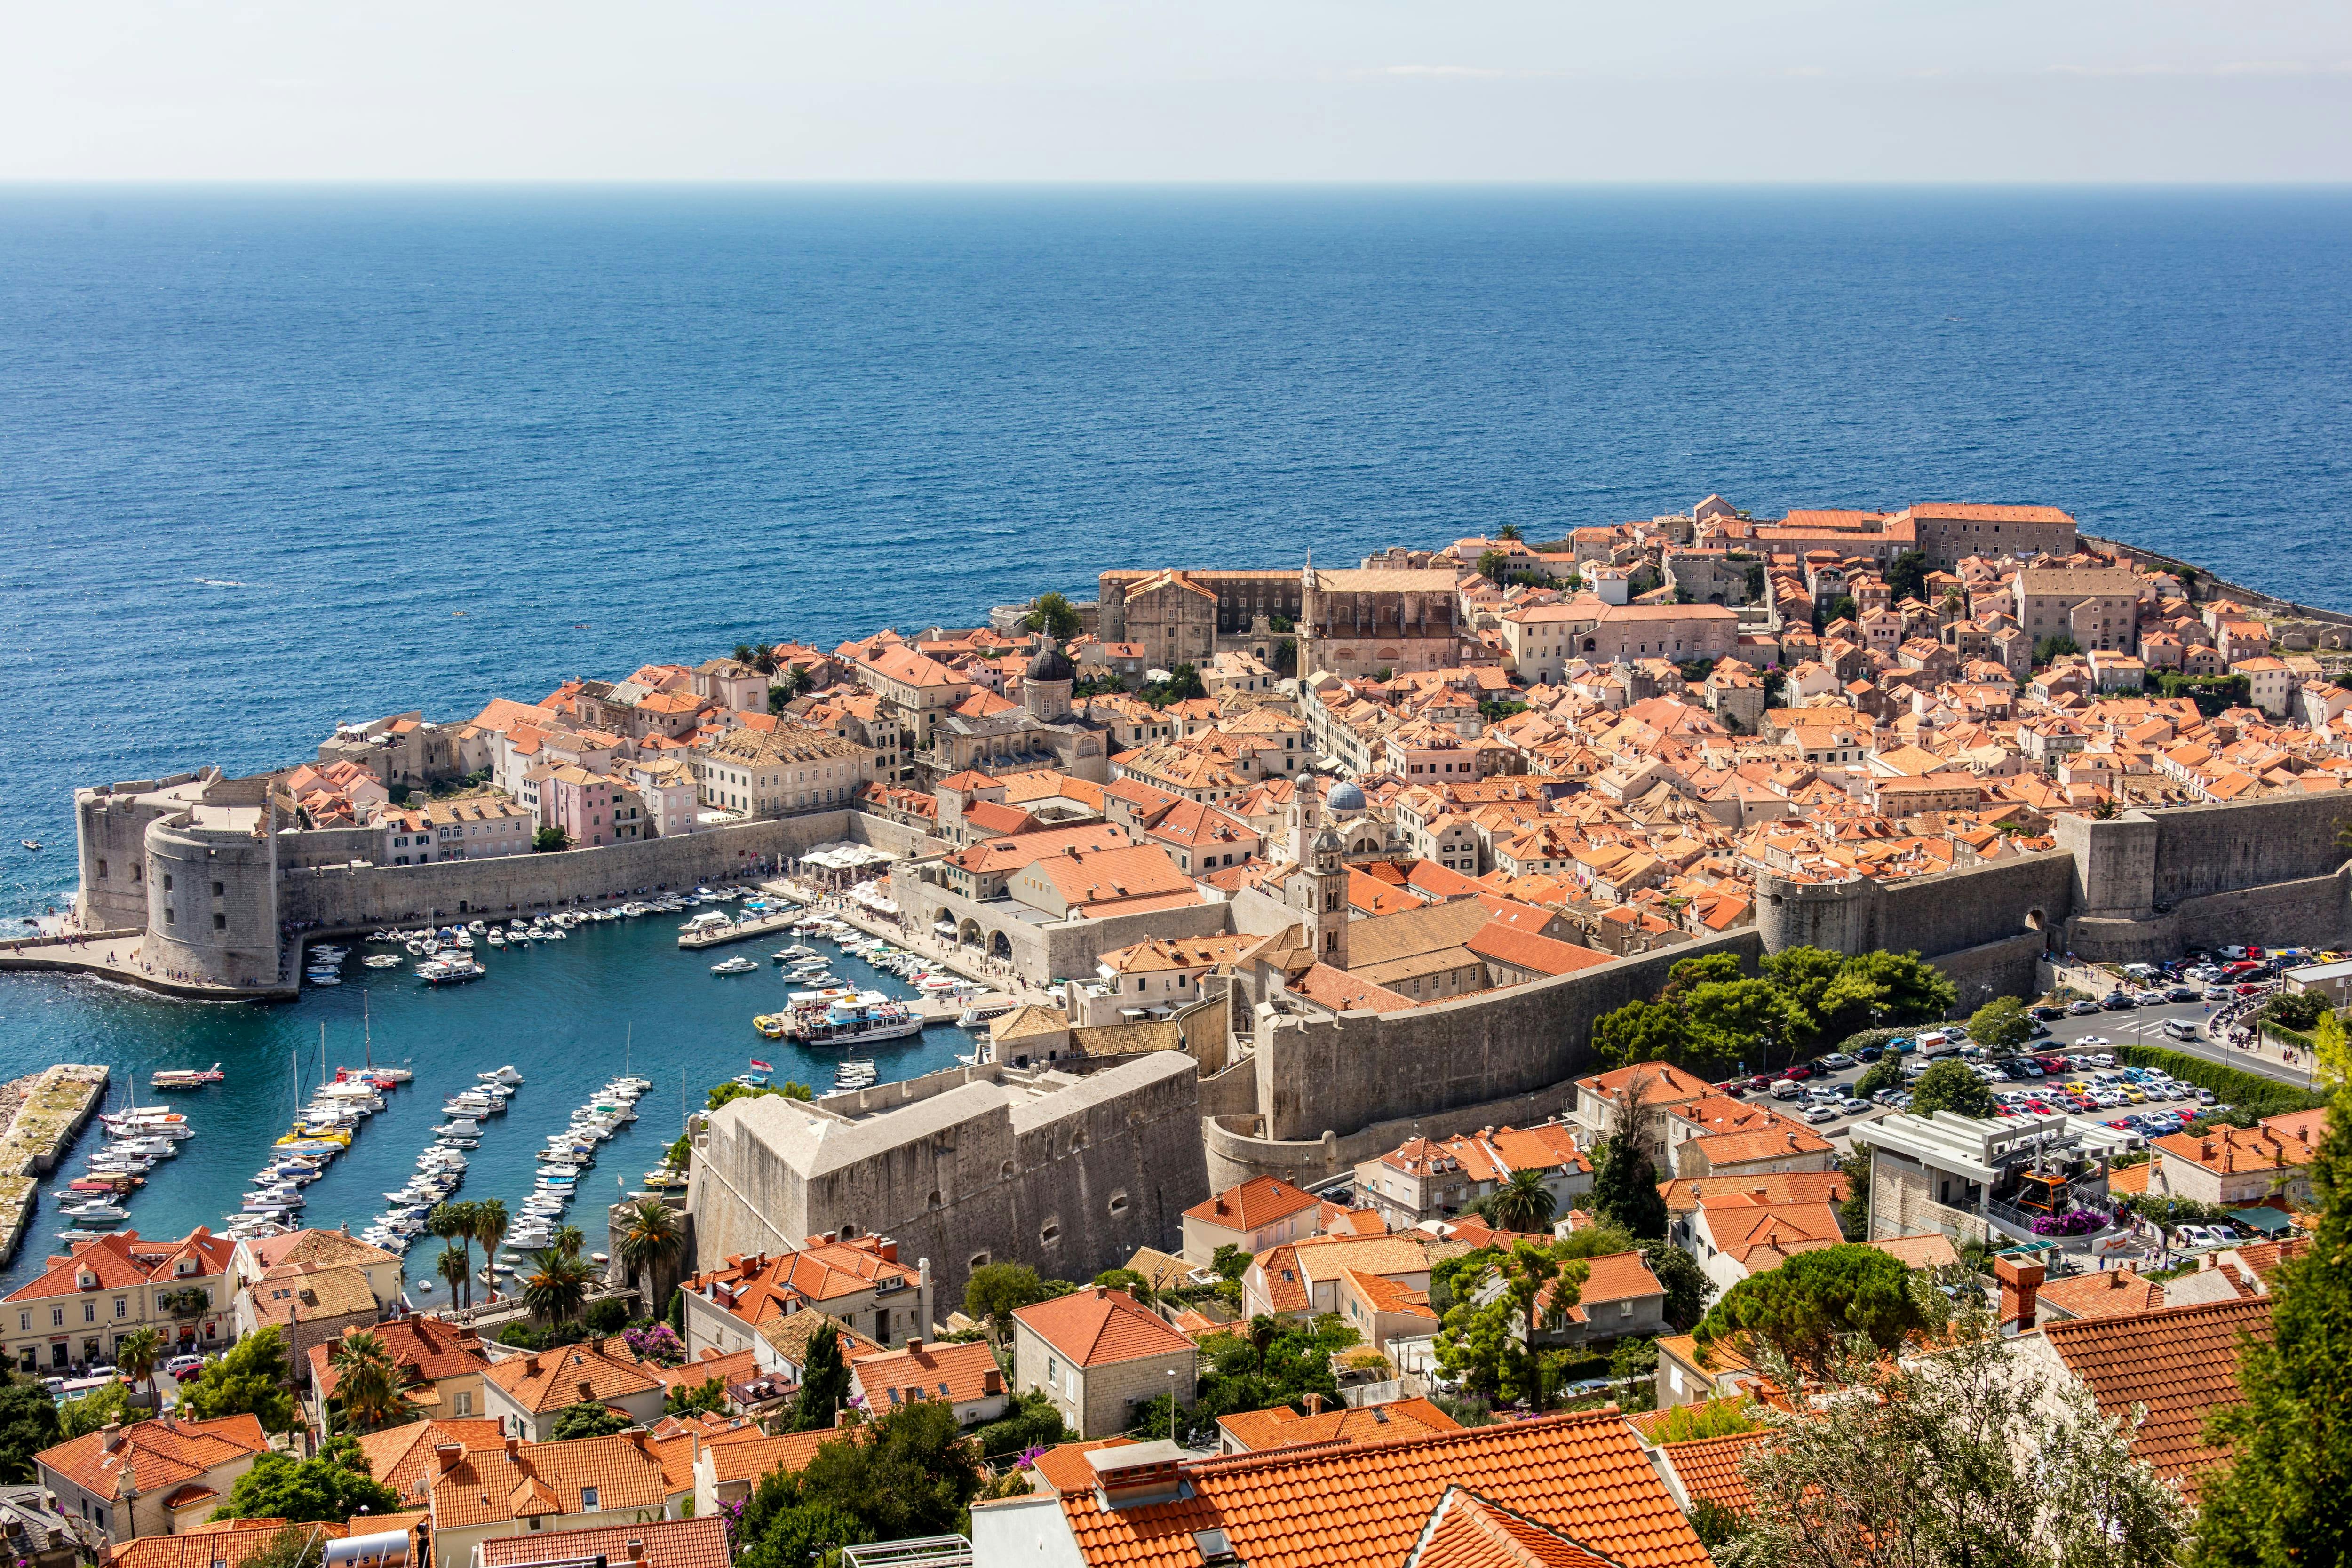 Wandeling in het Centrum van Dubrovnik